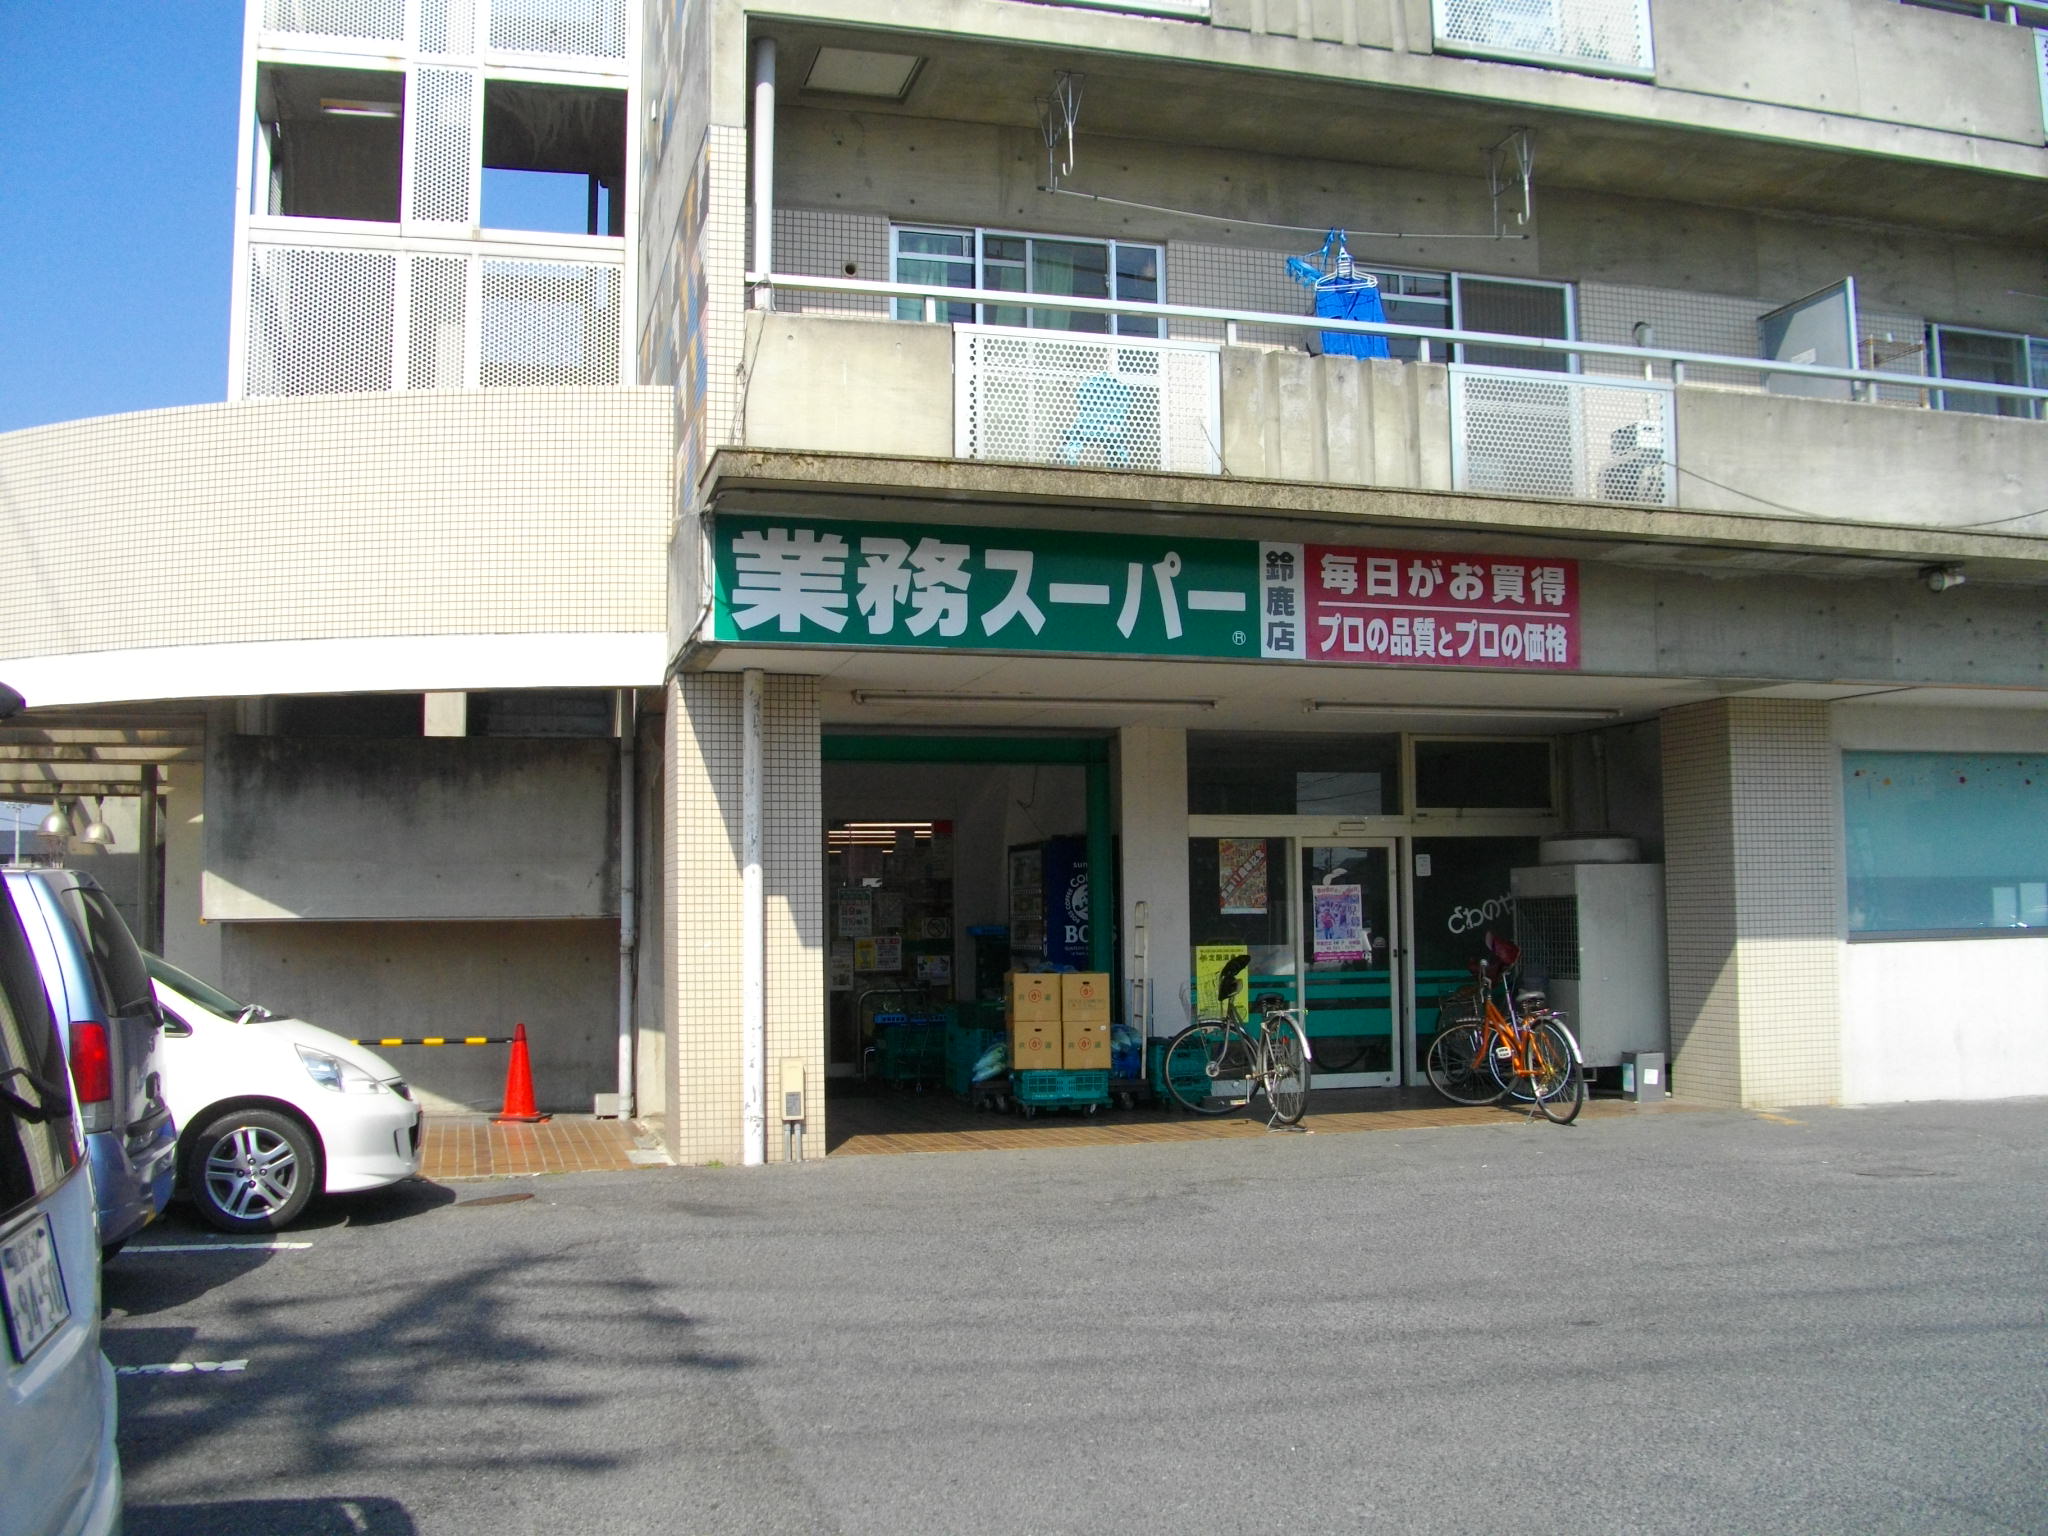 Supermarket. 507m to business super Suzuka store (Super)